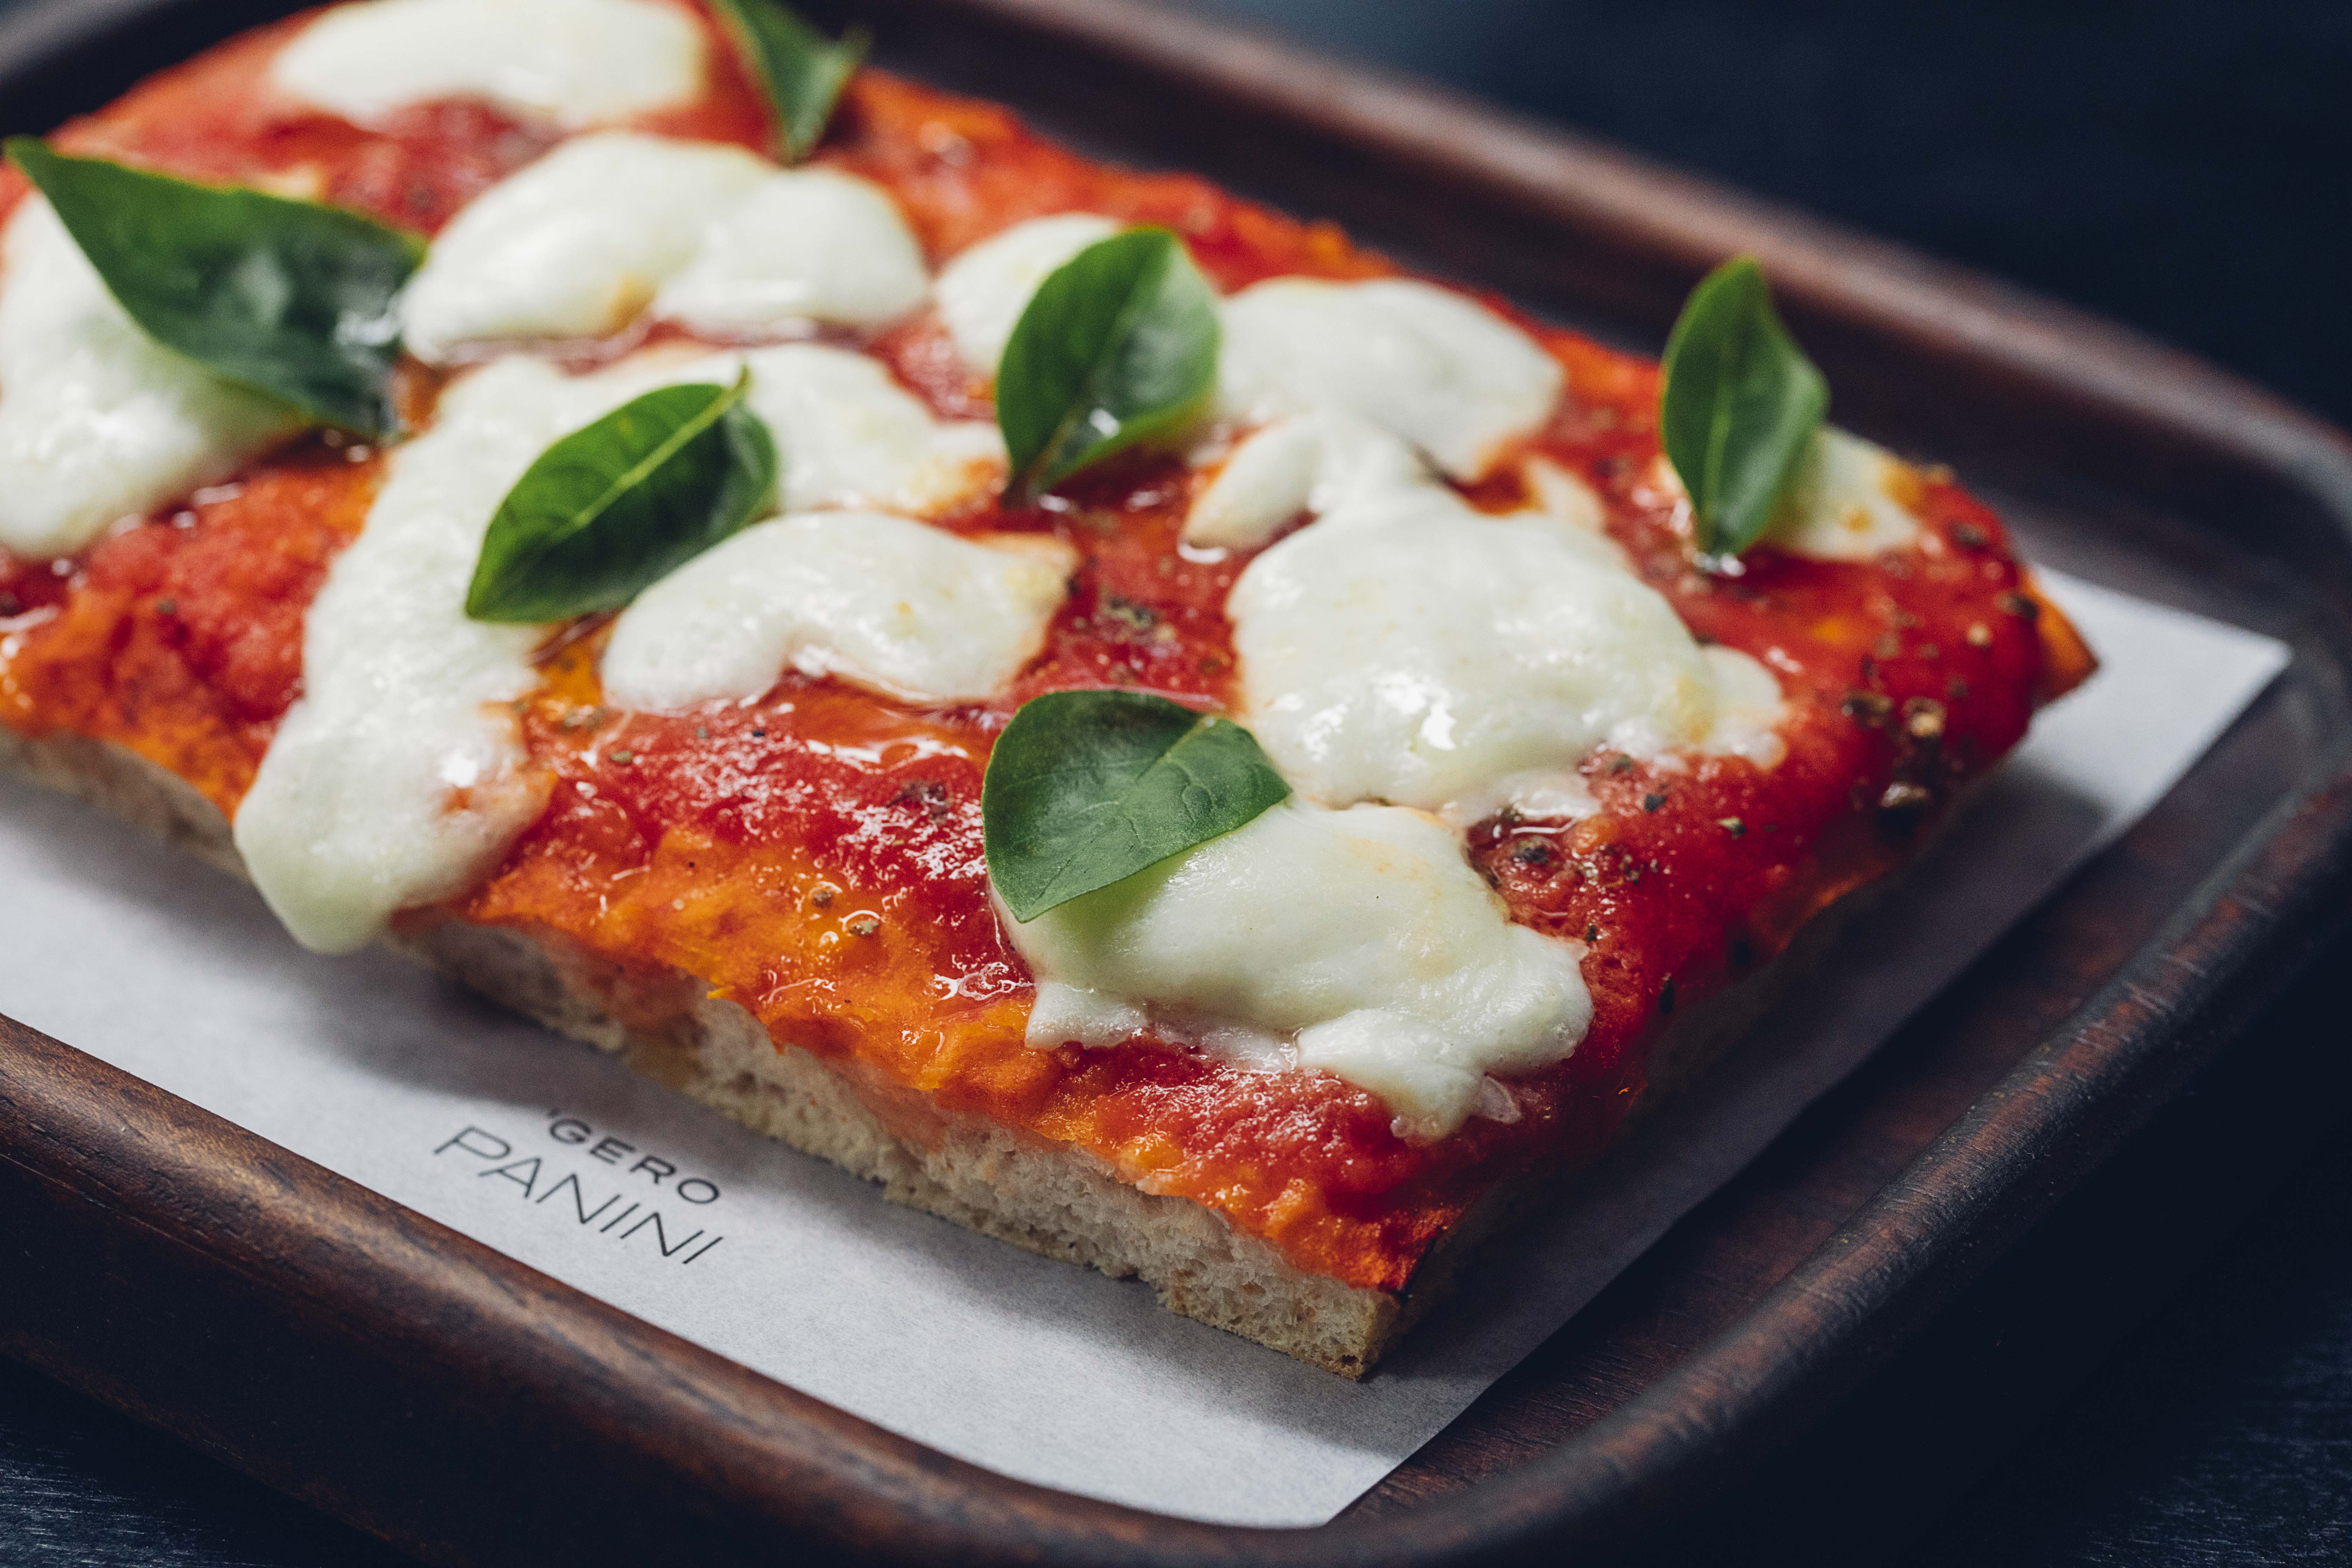 Gero Panini: Via delivery pelo app próprio, pague R$ 75,00 no almoço executivo com pizza de entrada, prato principal e sobremesa